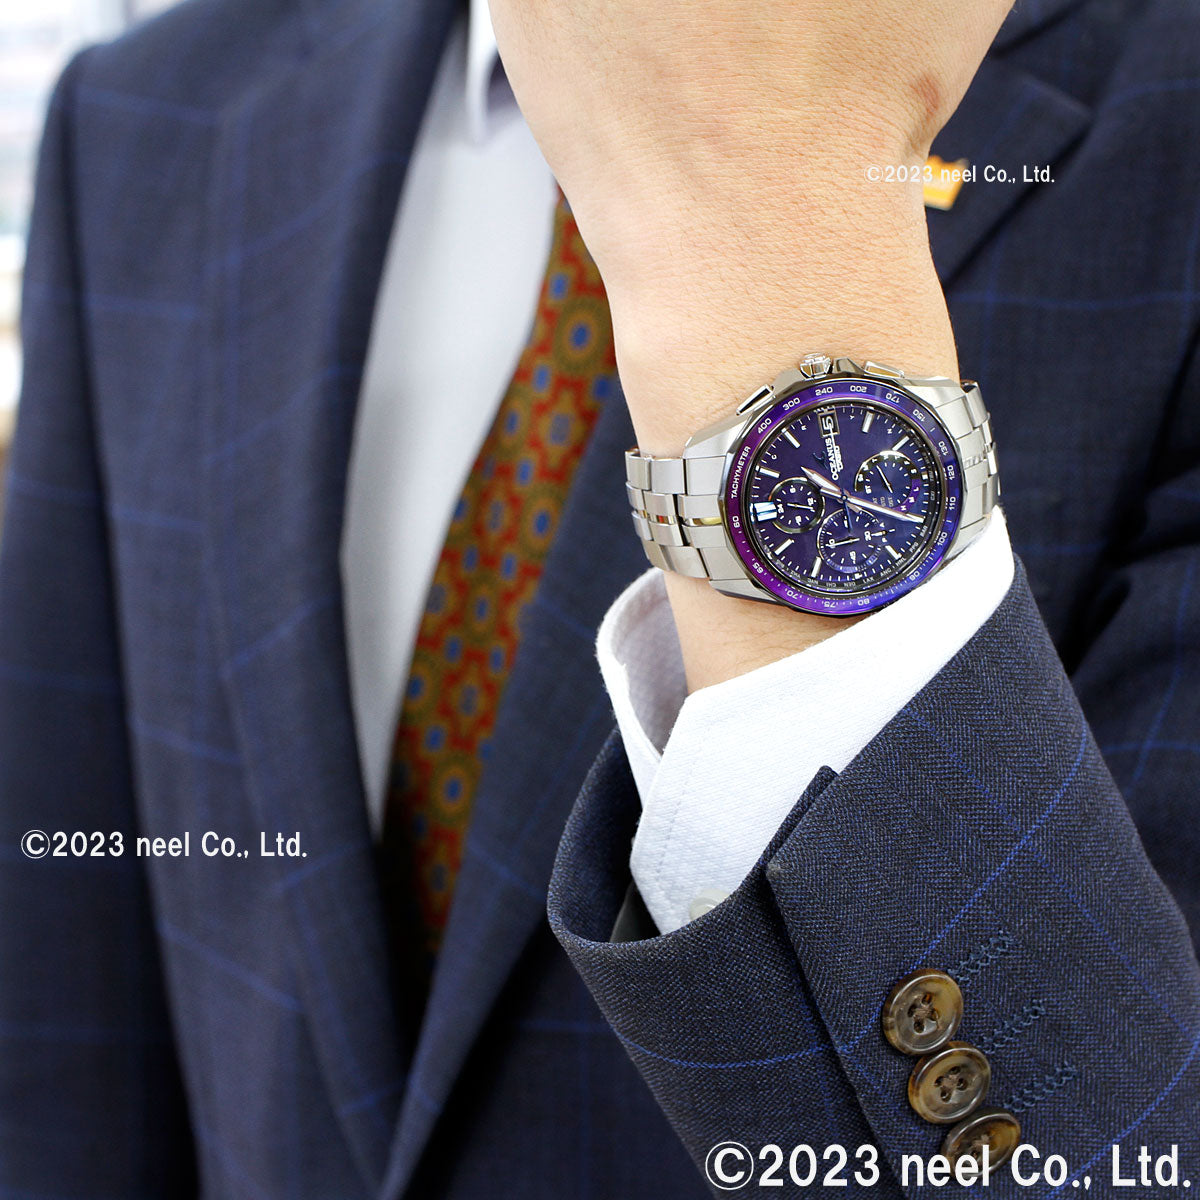 オシアナス Manta マンタ 限定モデル OCW-S7000C-2AJF メンズ 腕時計 電波ソーラー タフソーラー CASIO カシオ 日本製 Premium Production Line